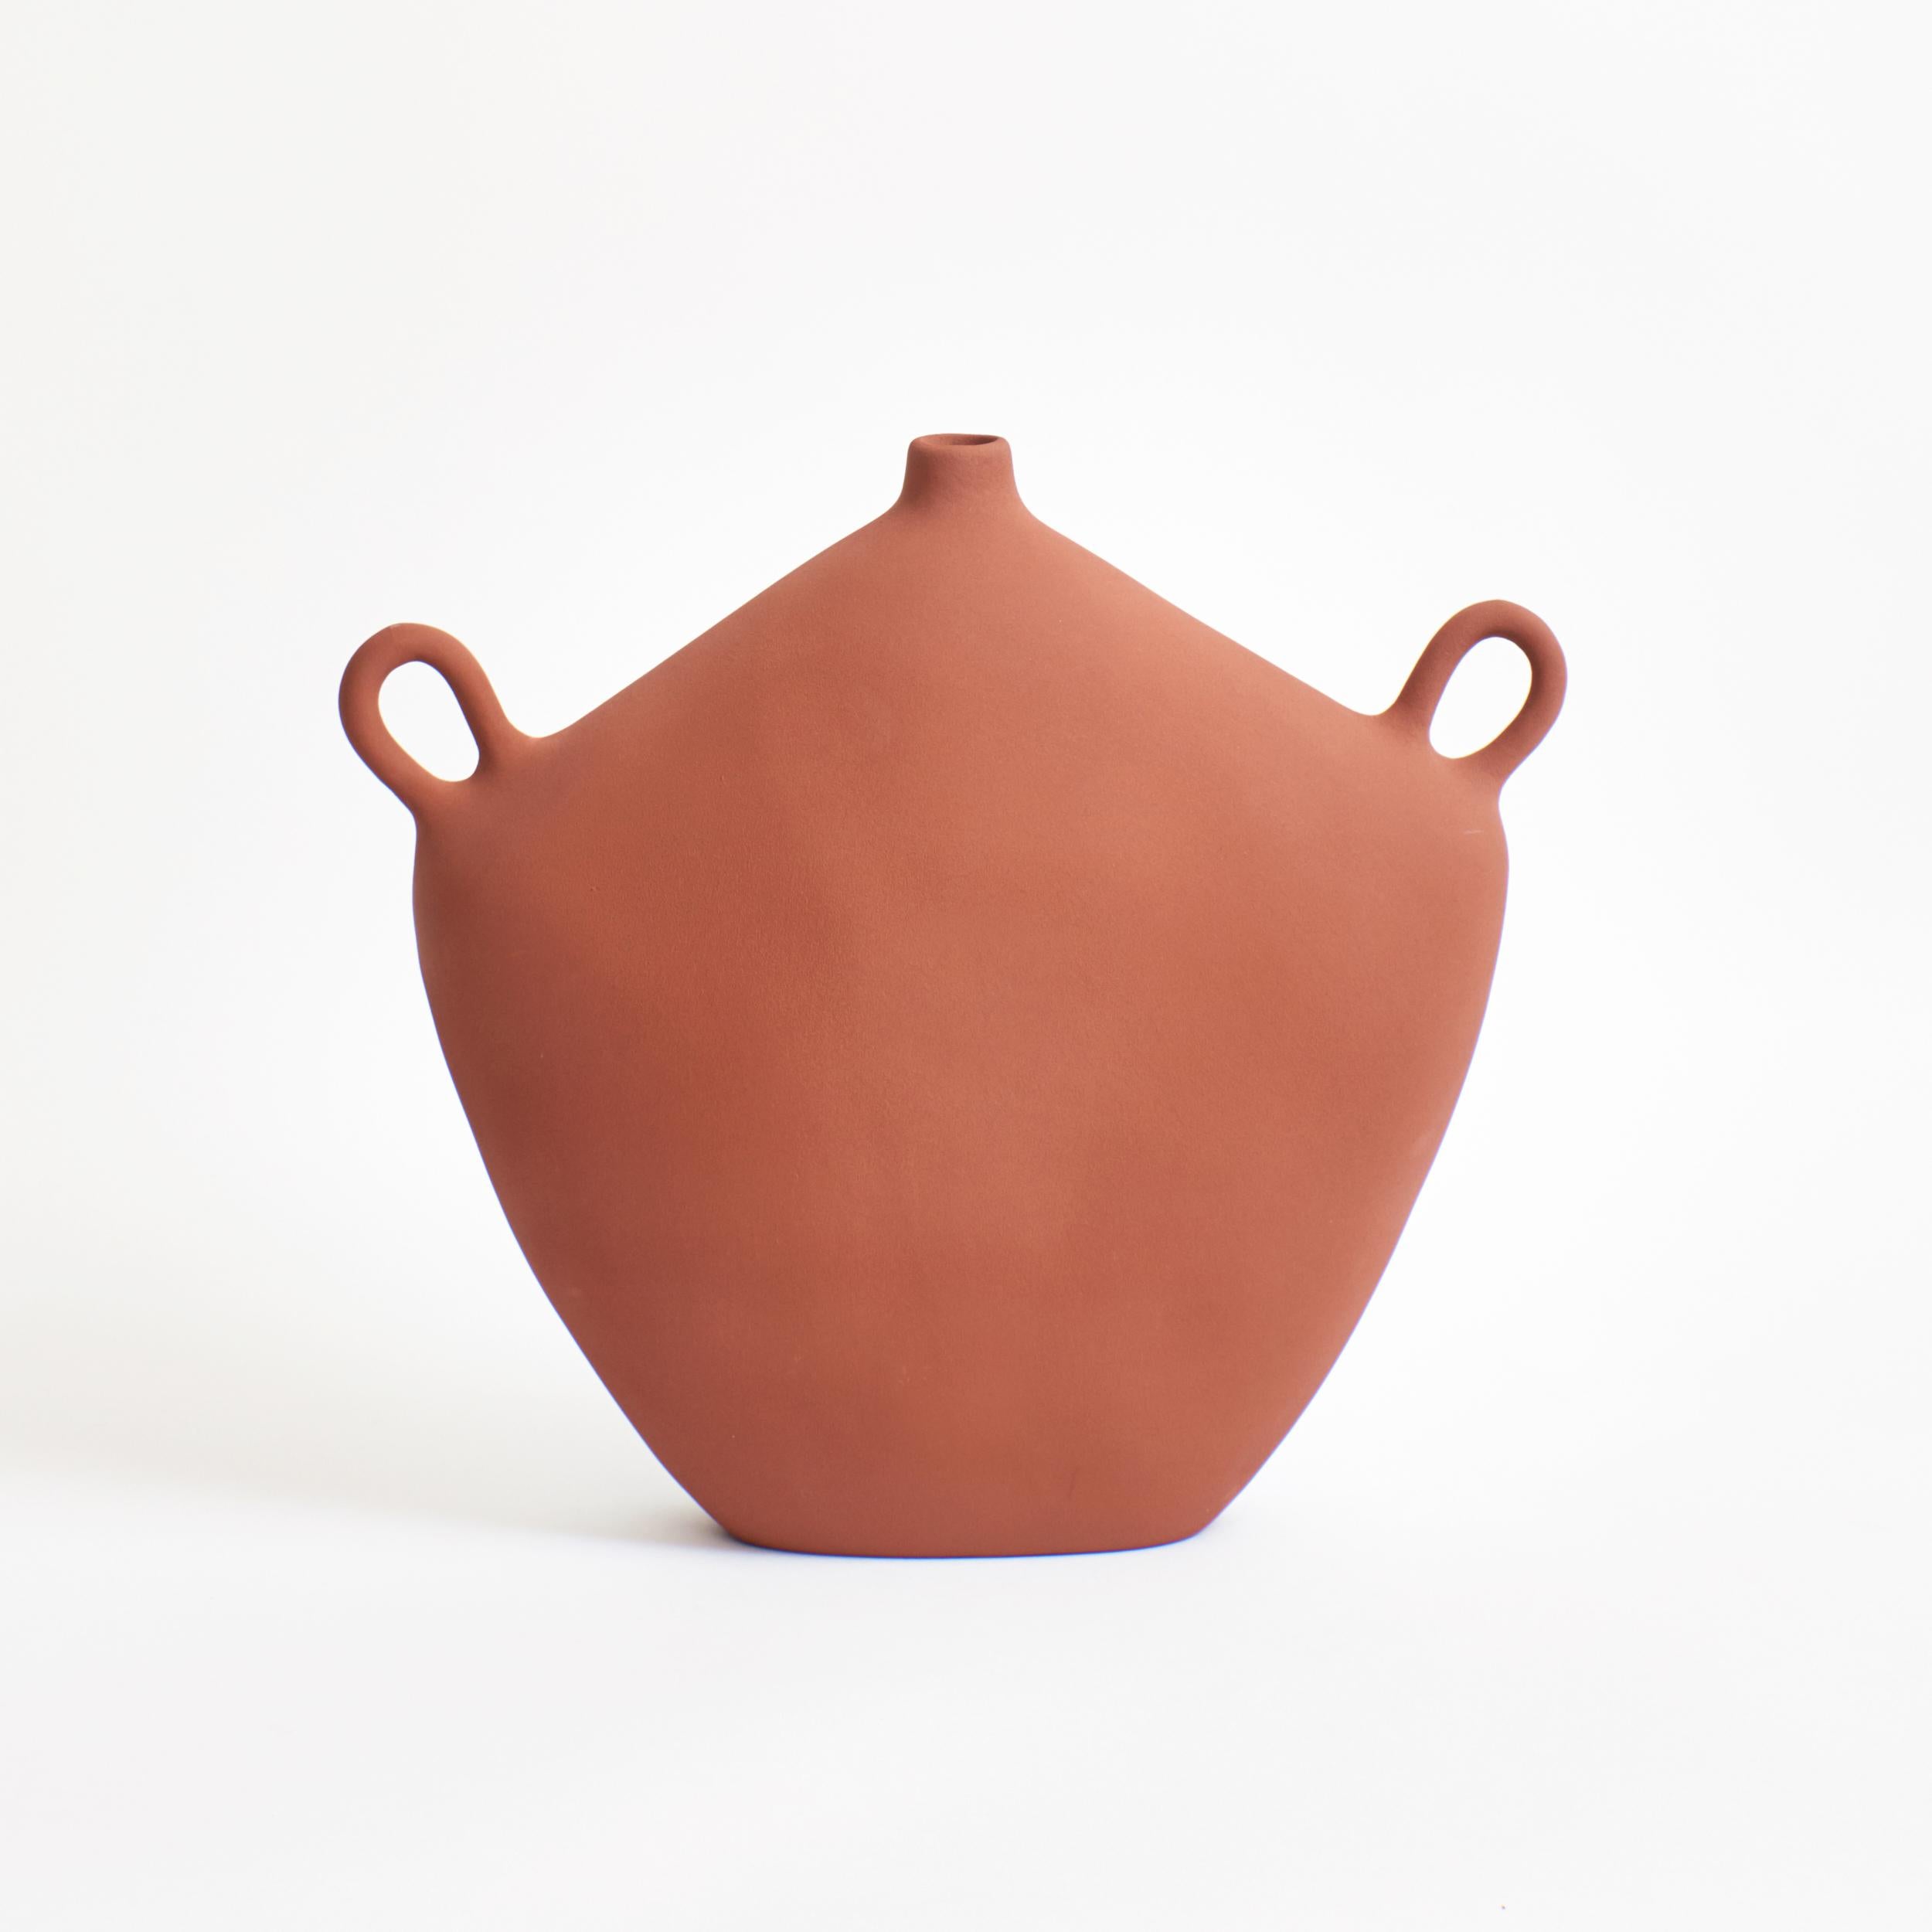 Maria Gefäß aus Backstein
Entworfen von Projekt 213A im Jahr 2020
Handgefertigtes Steingut

Diese Vase ist von der griechisch-römischen Epoche inspiriert, hat ein zeitloses Aussehen und ist mit einer modernen, strukturierten, glänzenden Glasur